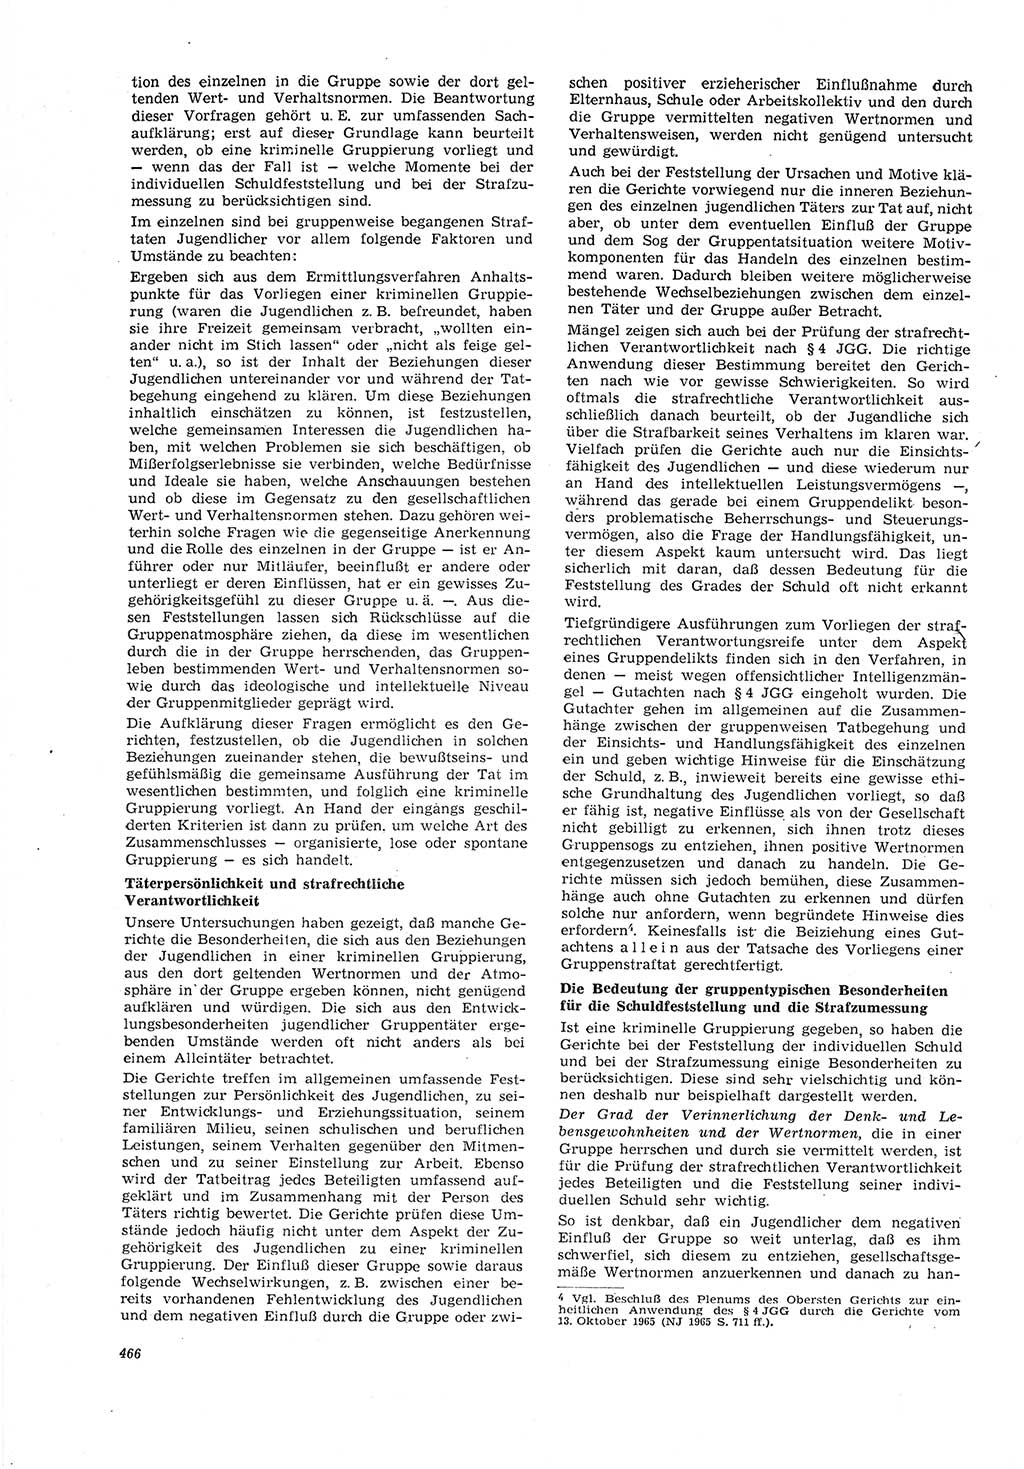 Neue Justiz (NJ), Zeitschrift für Recht und Rechtswissenschaft [Deutsche Demokratische Republik (DDR)], 21. Jahrgang 1967, Seite 466 (NJ DDR 1967, S. 466)